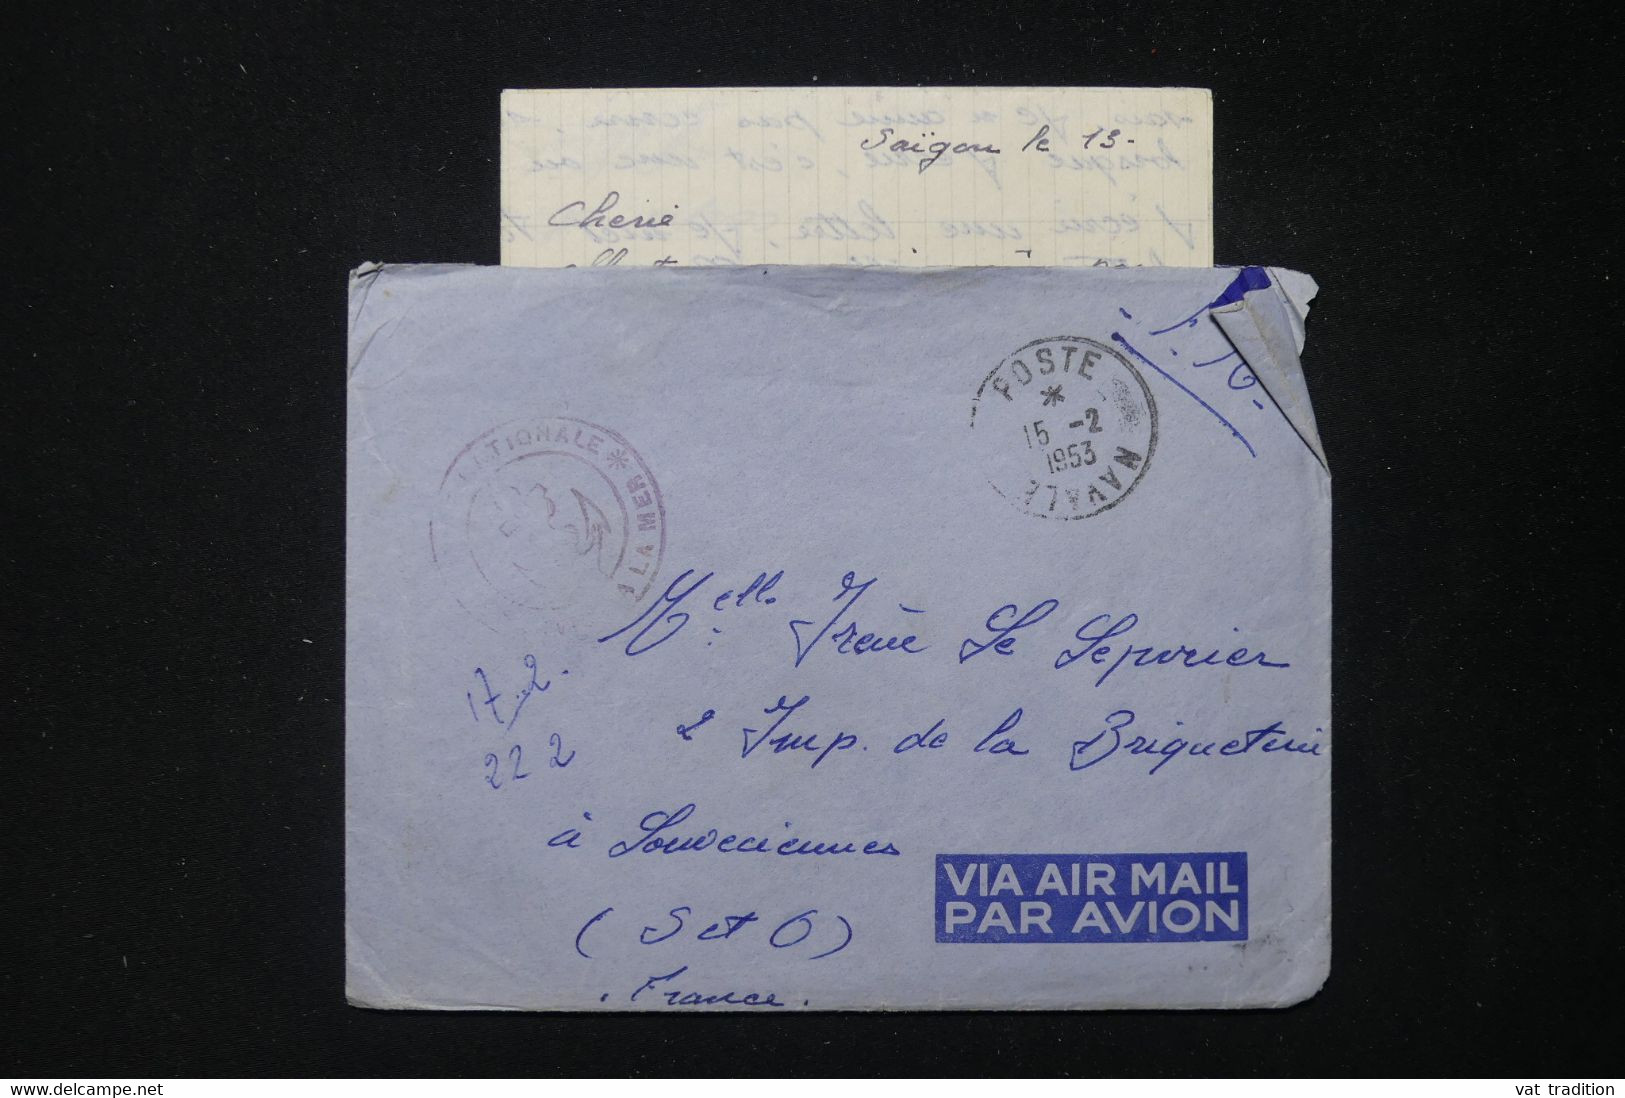 FRANCE - Enveloppe En FM Avec Contenu D'un Marin En Indochine En 1953 Pour La France - L 83833 - Vietnamkrieg/Indochinakrieg